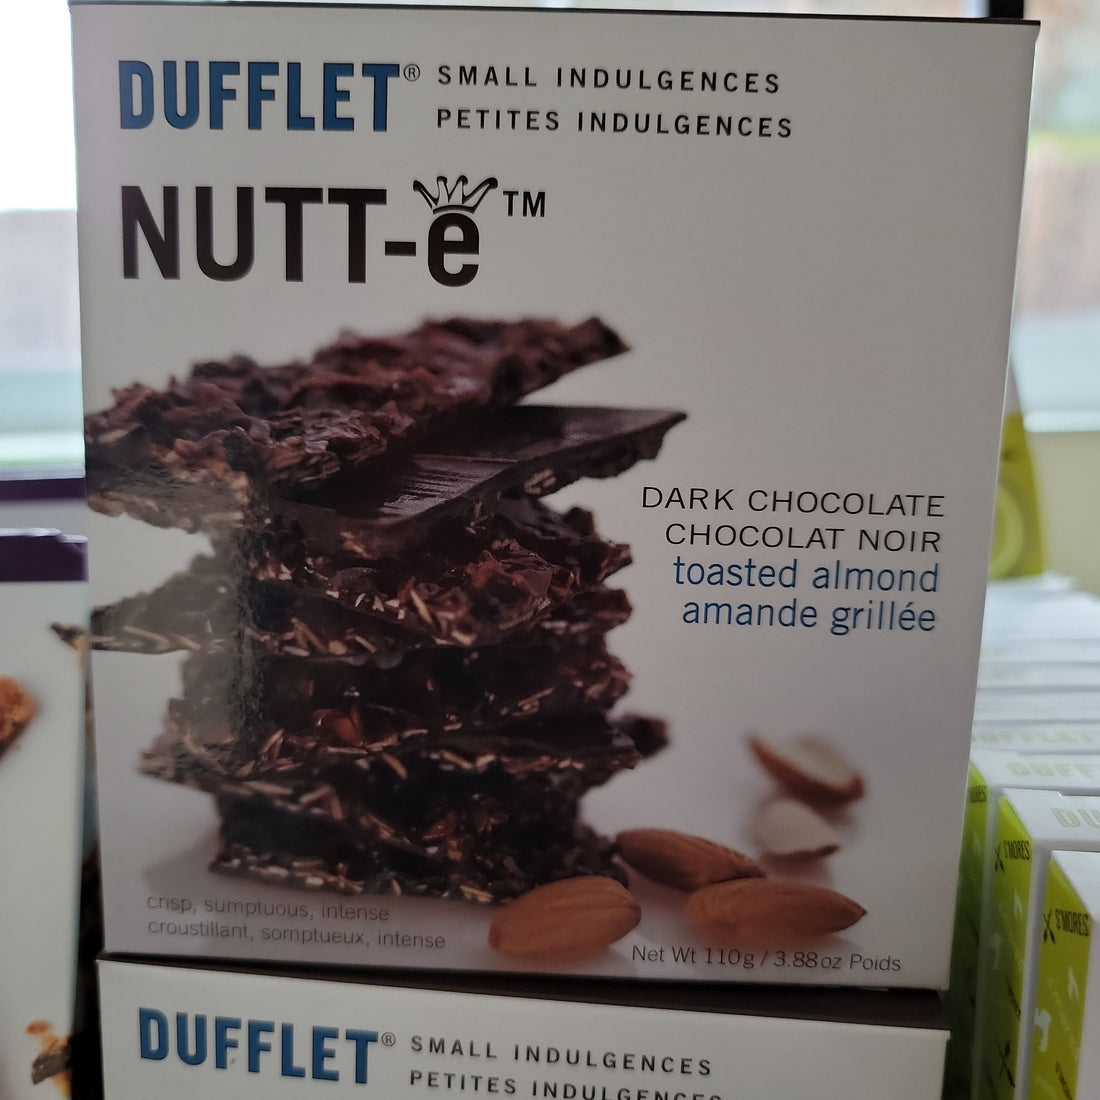 NUTT-e - Dufflet